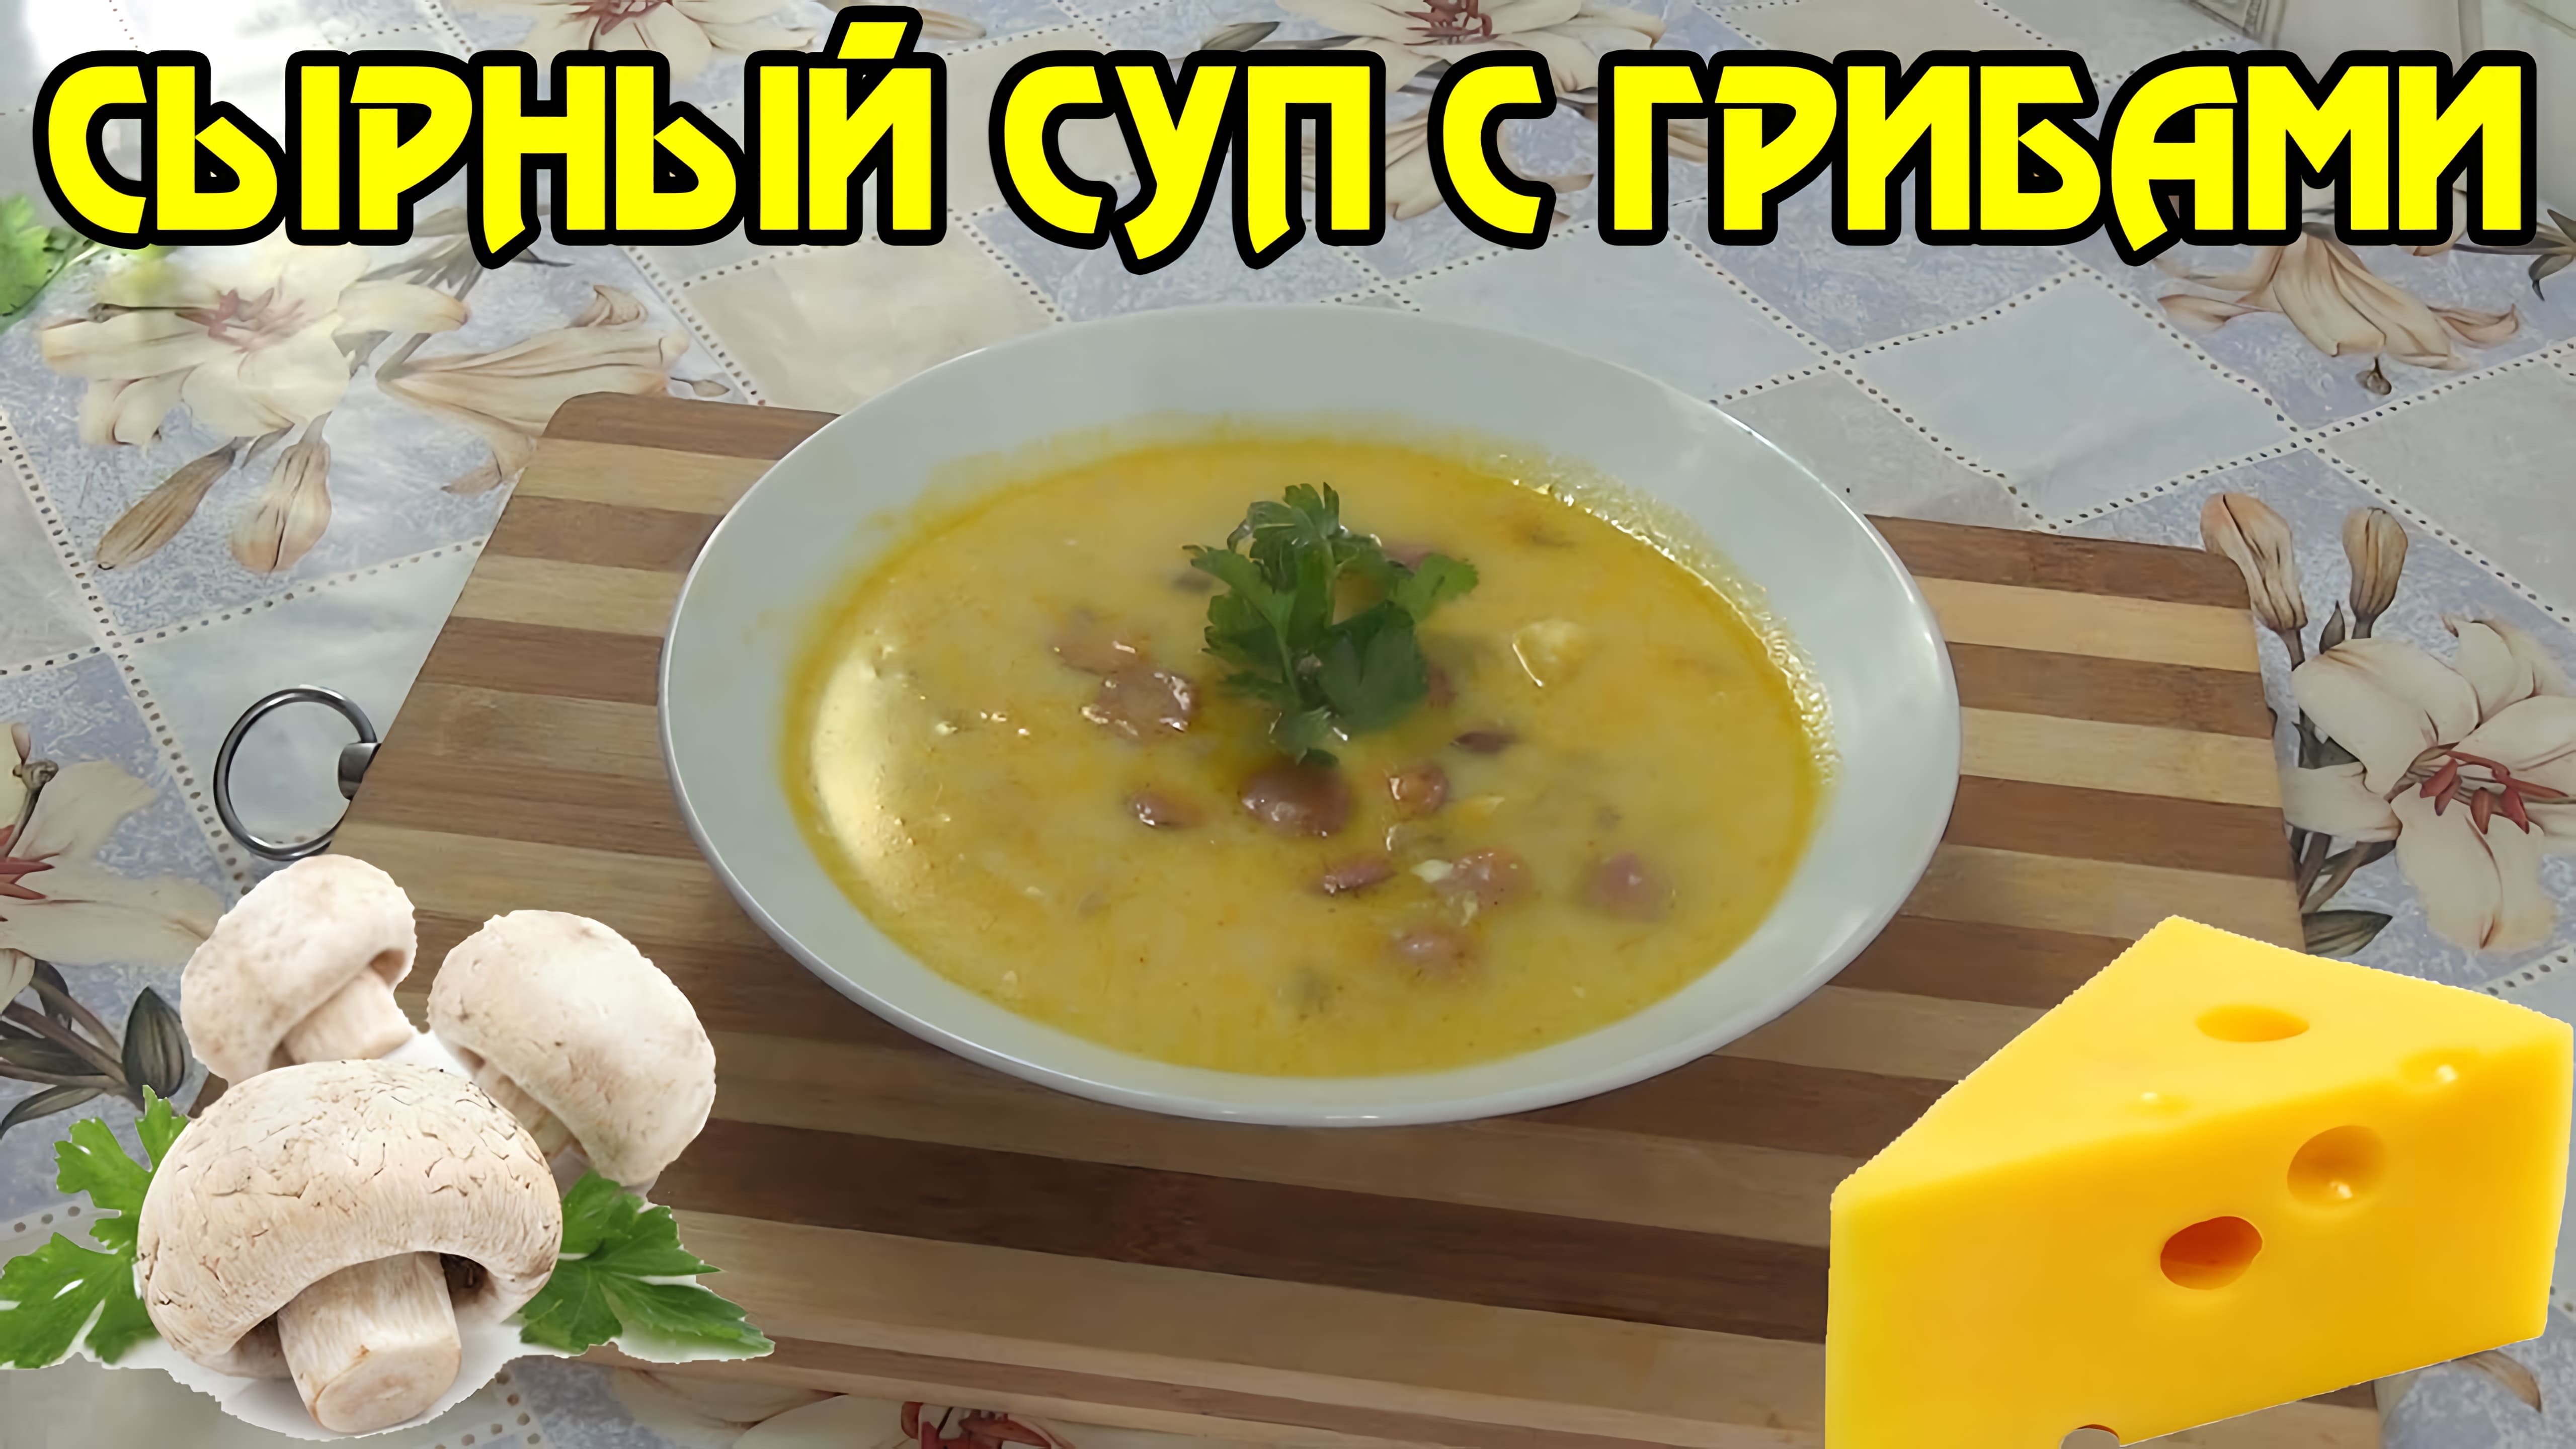 Видео: Сырный суп с грибами — ароматный и насыщенный!